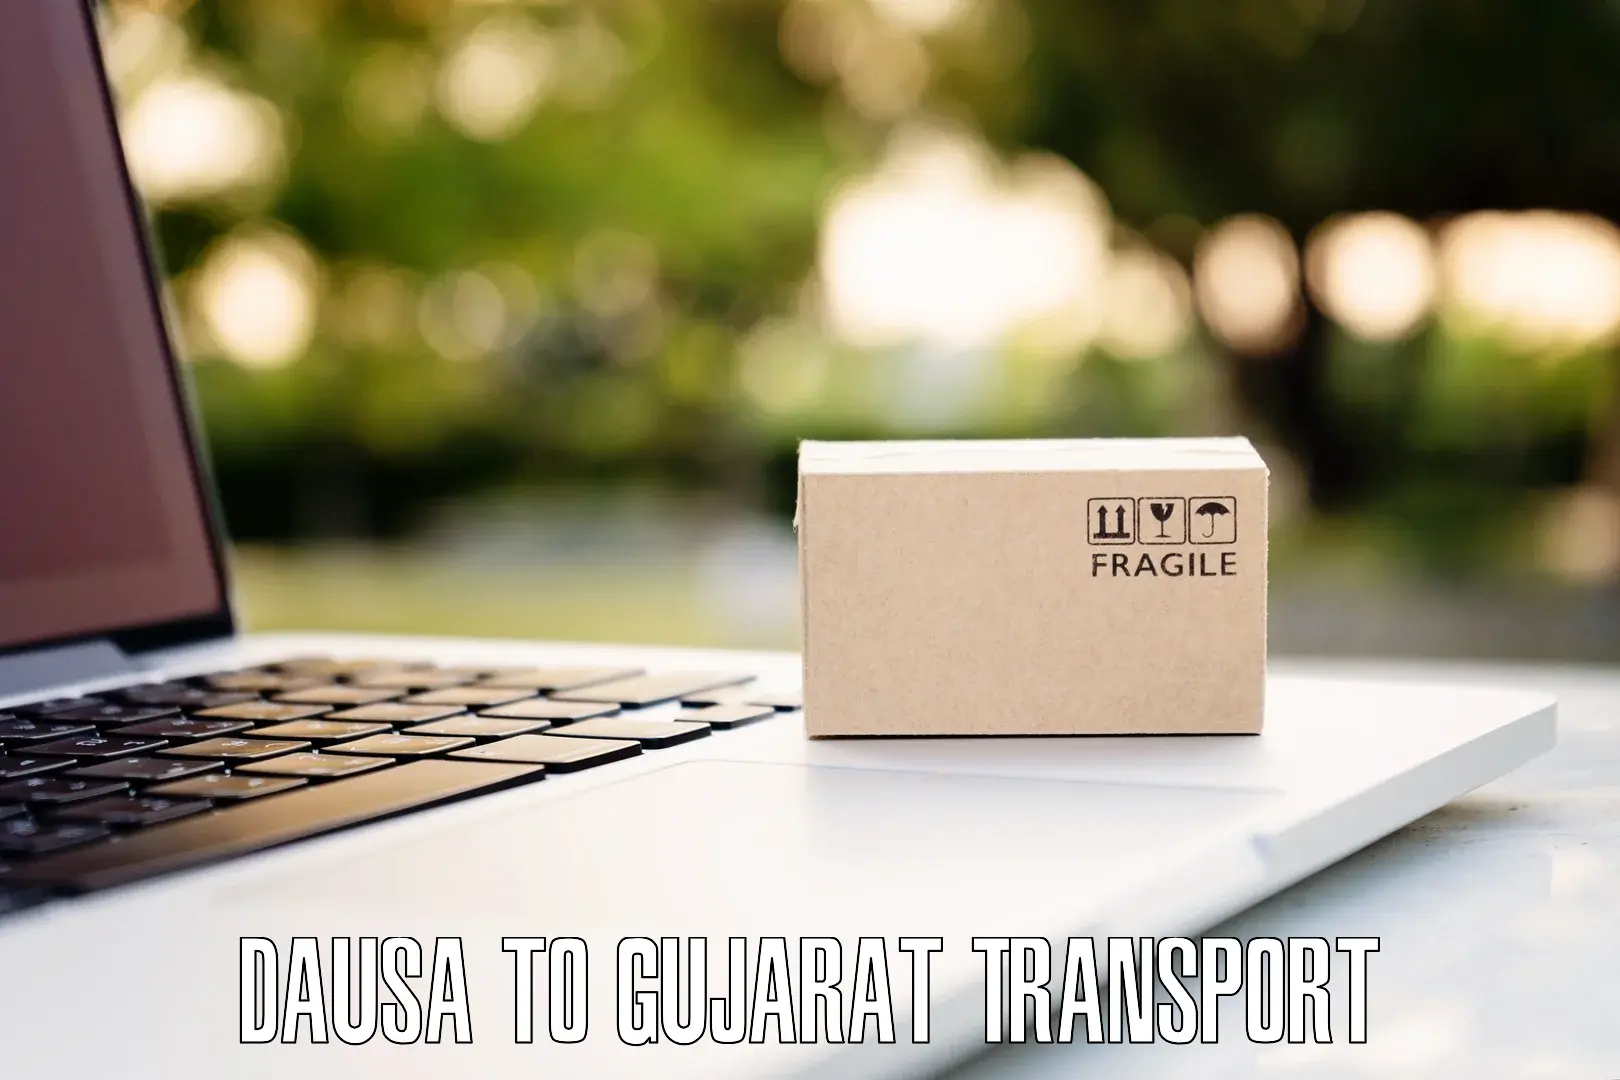 Bike transport service Dausa to Gujarat